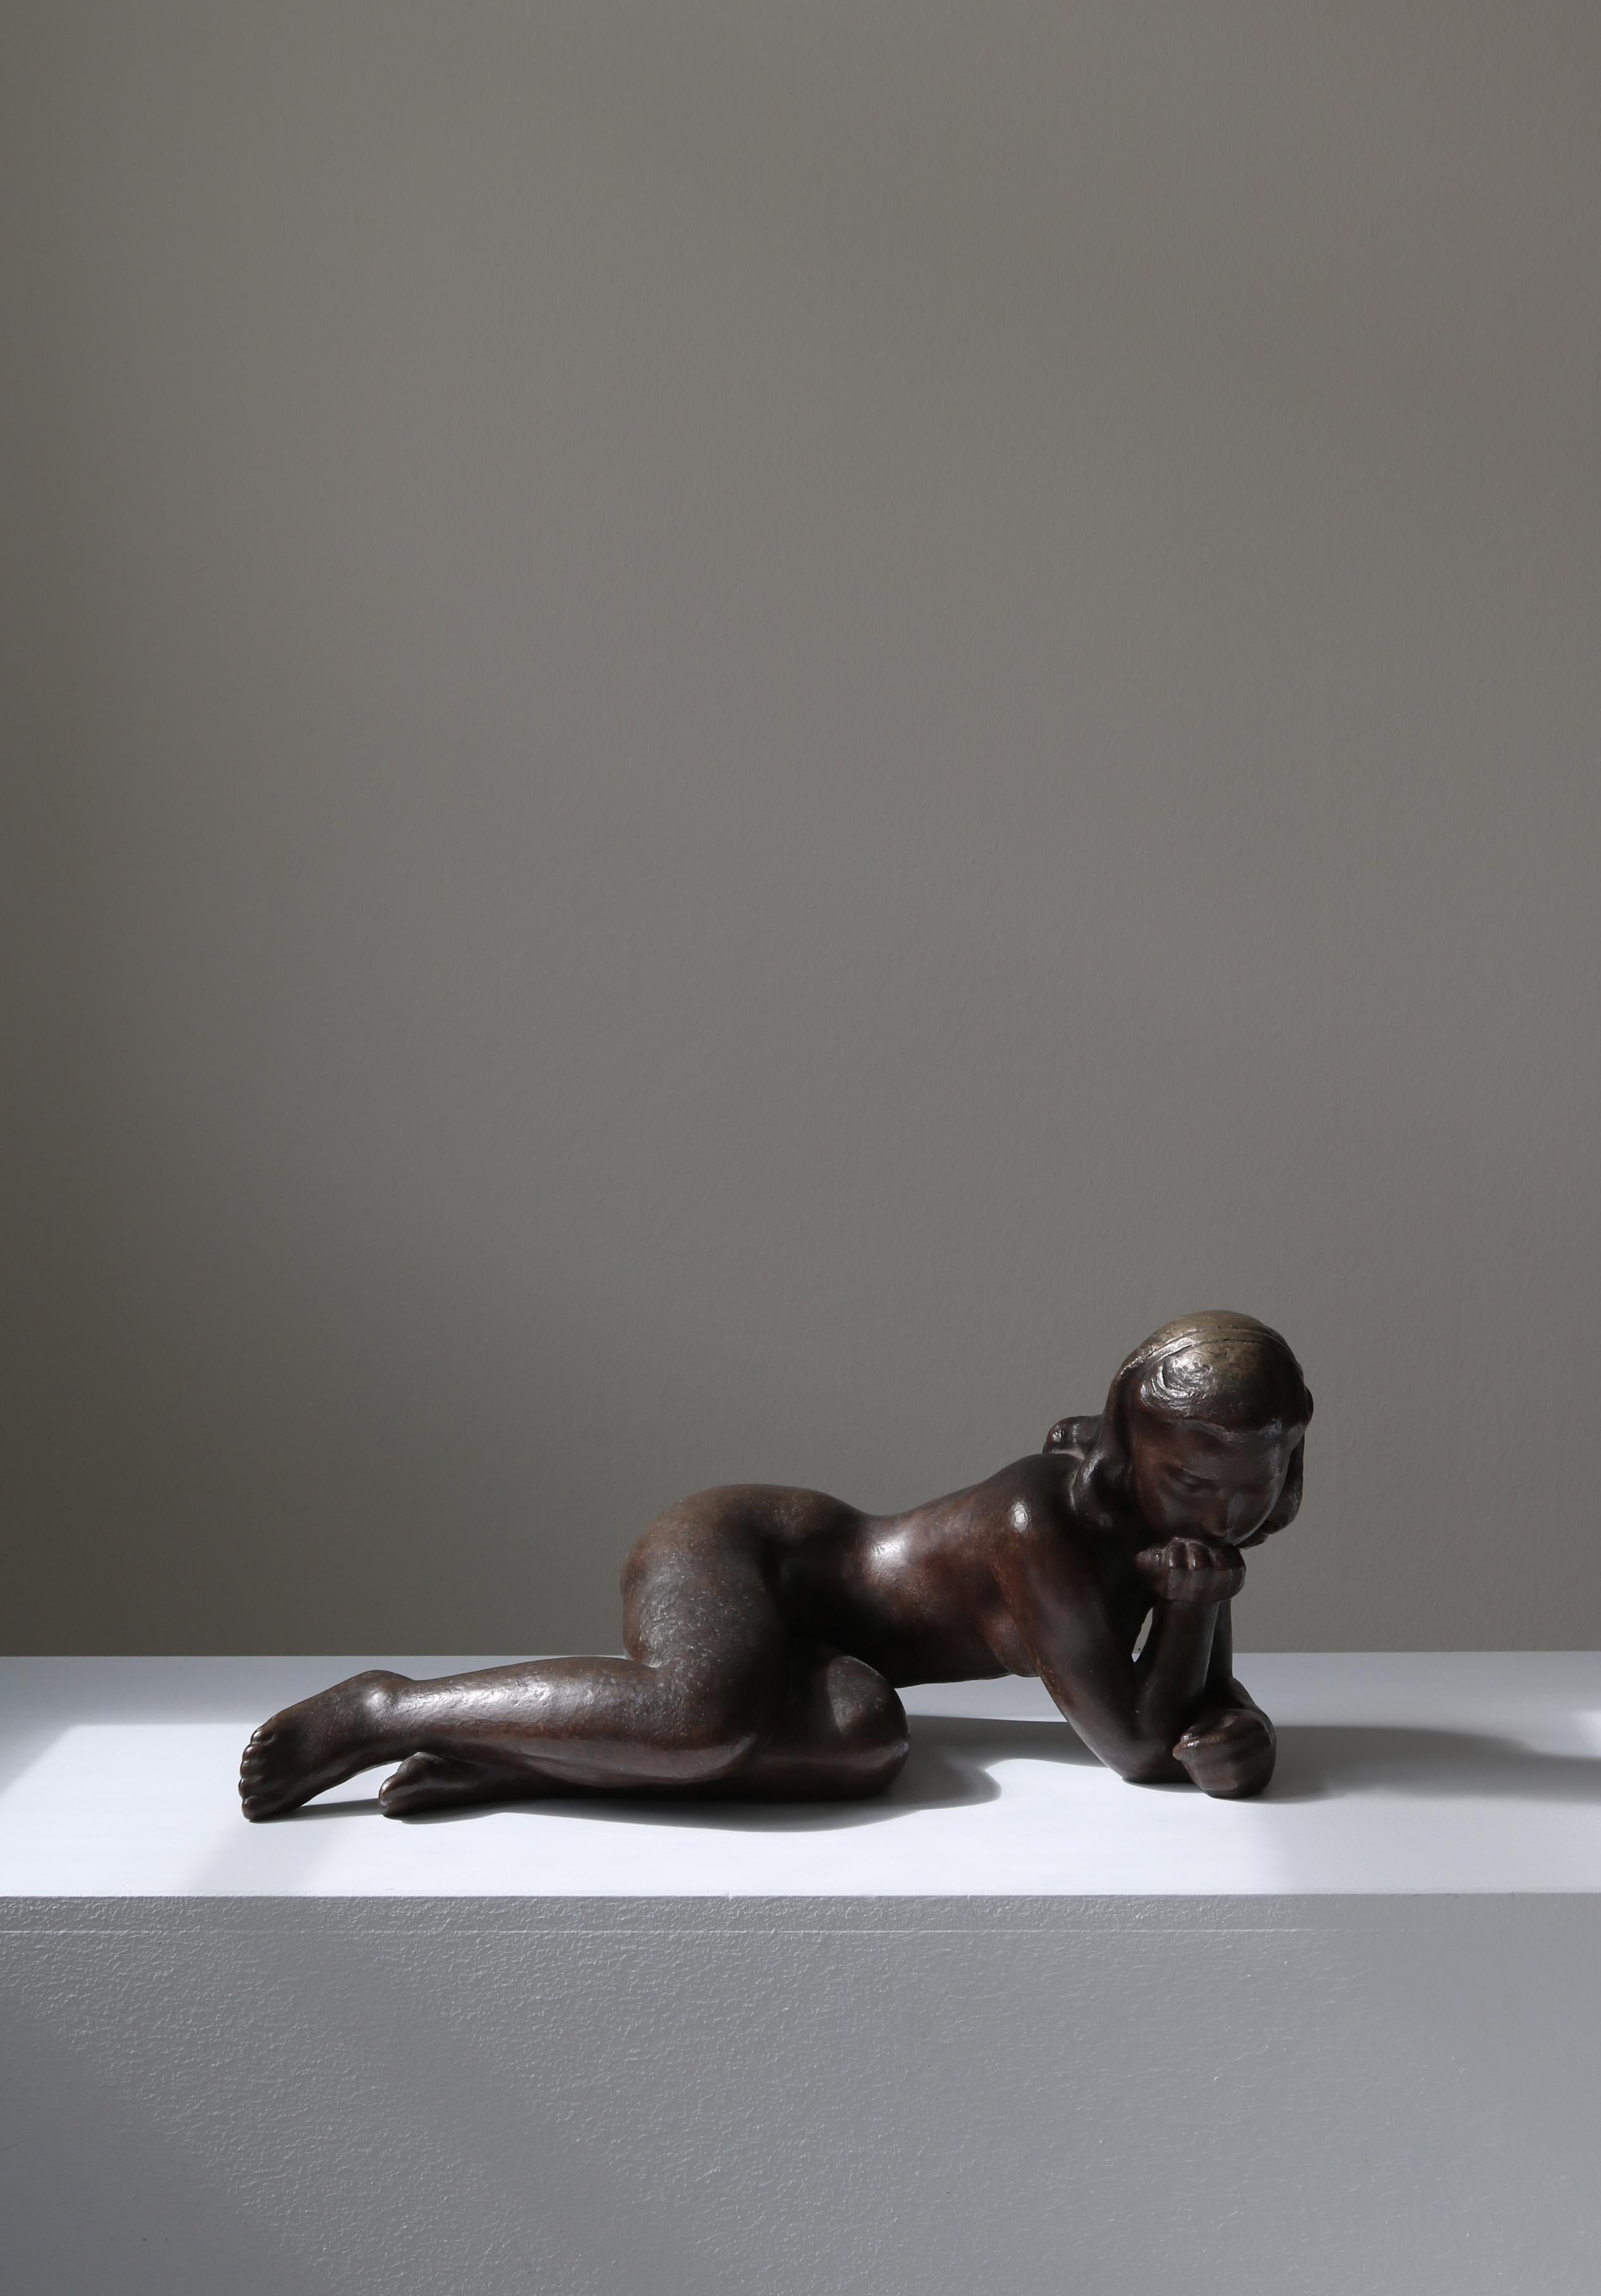 Grande sculpture en bronze coulé de l'artiste danois Johannes Hansen représentant une jeune fille perdue dans ses pensées. La sculpture a été réalisée dans les années 1940 à la fonderie de bronze 